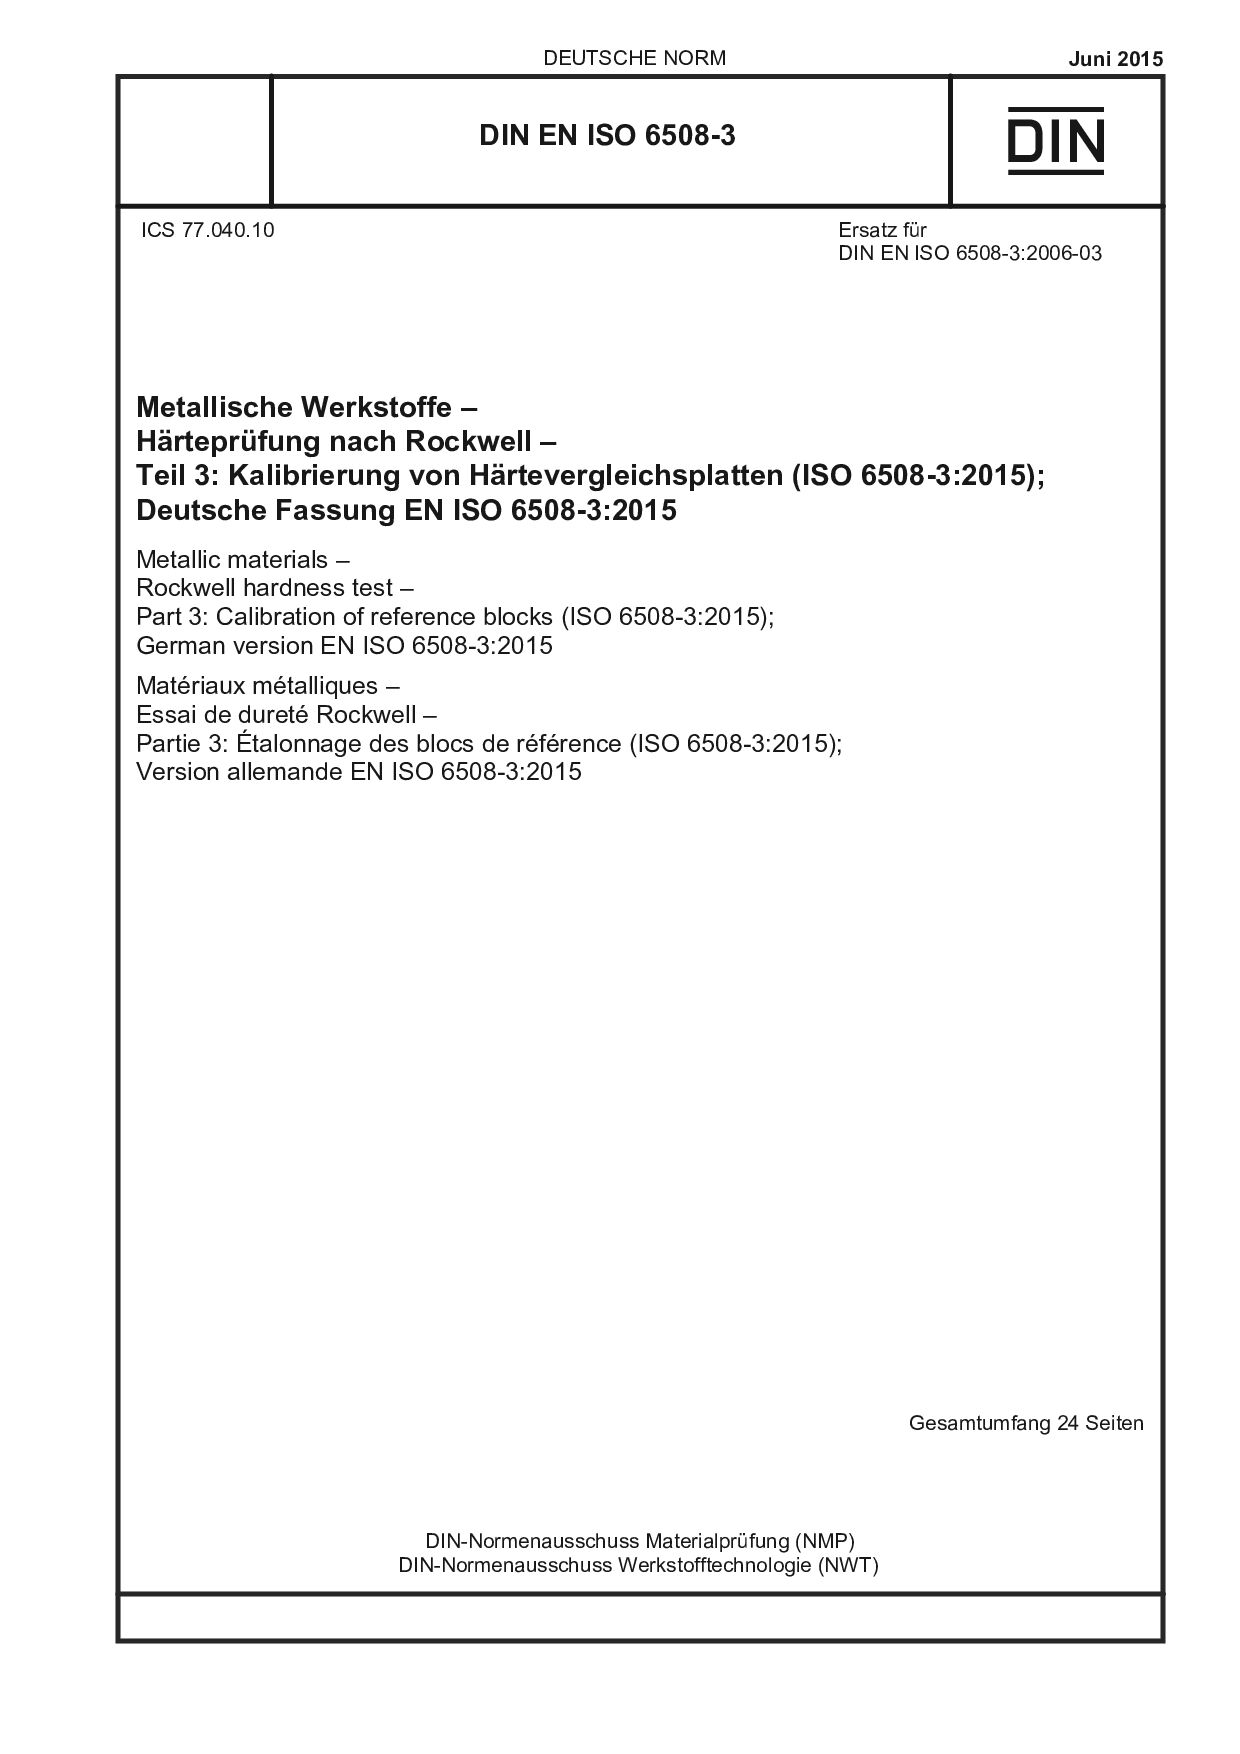 DIN EN ISO 6508-3:2015